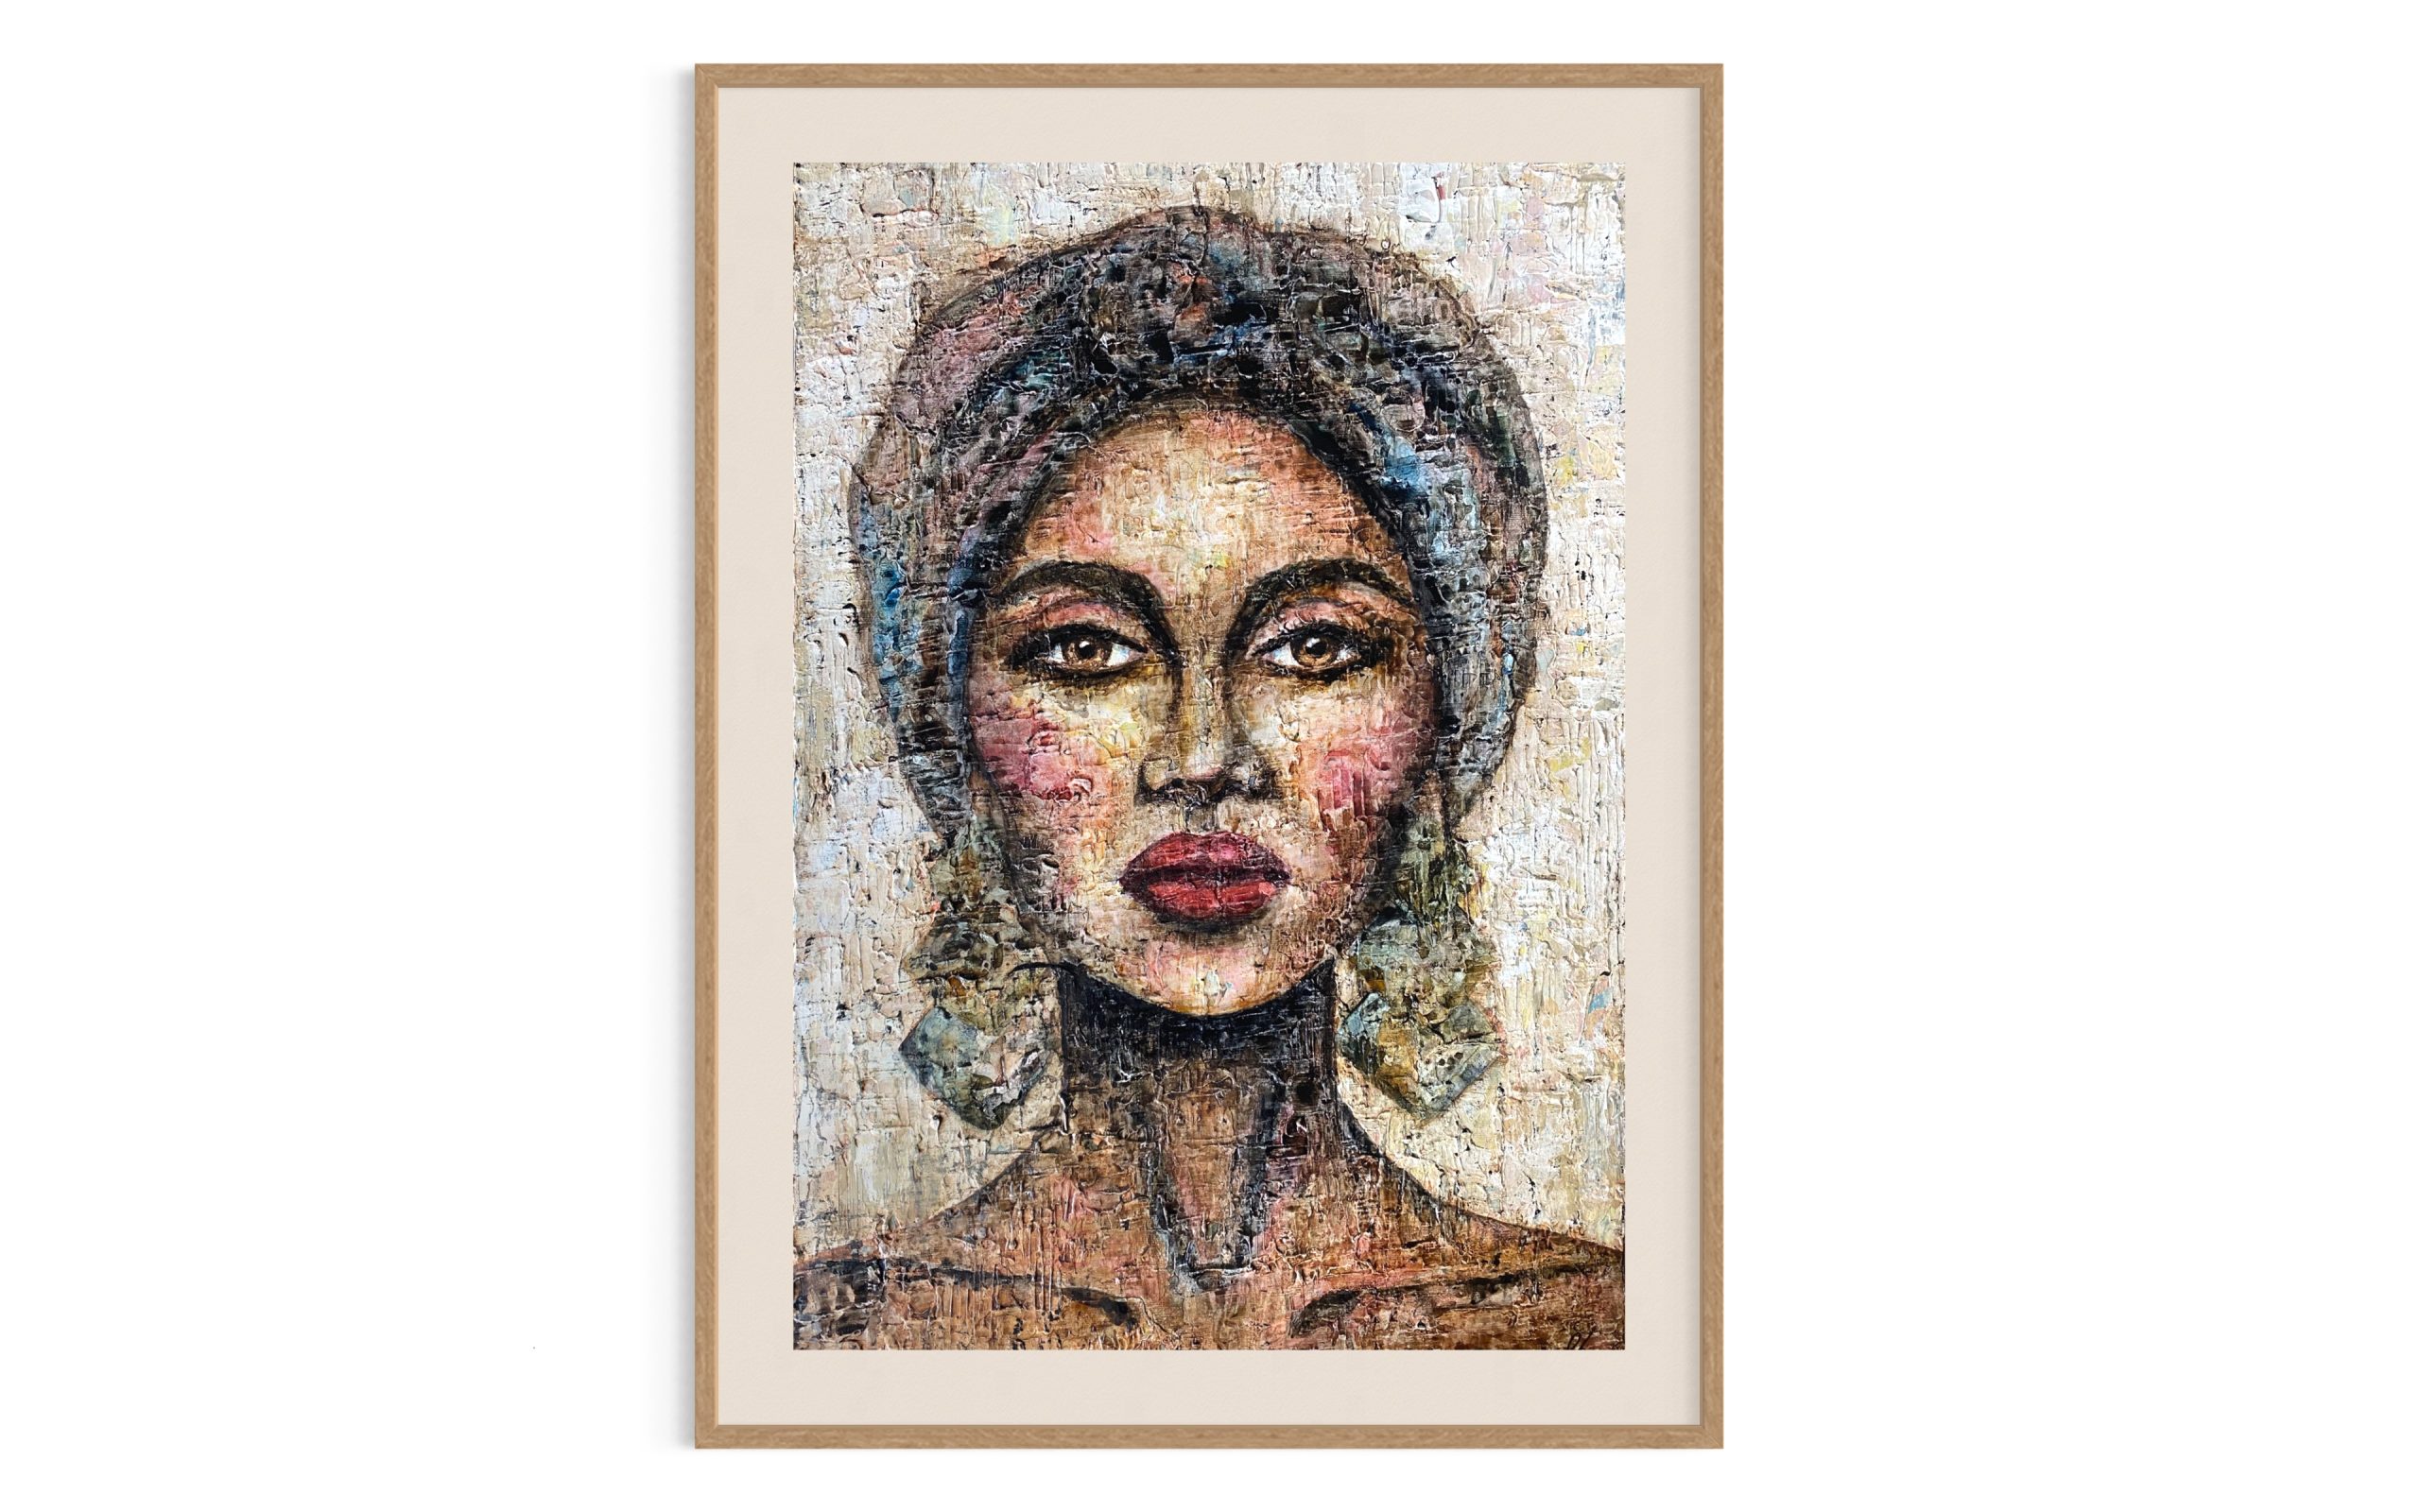 Maleri-af-afrikansk-staerk-kvinde-gyldne-farver-portraet-kunst-til-vaeggen